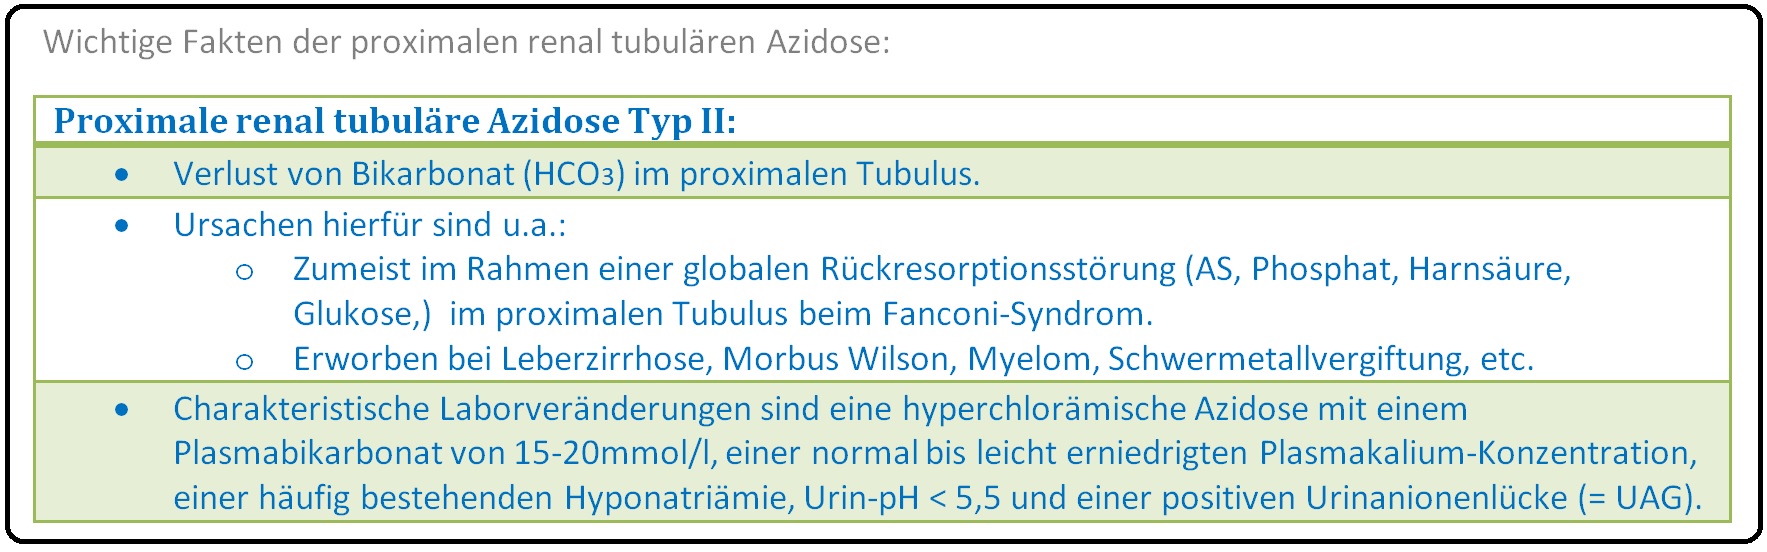 642 Wichtige Fakten der proximalen renal tubulären Azidose